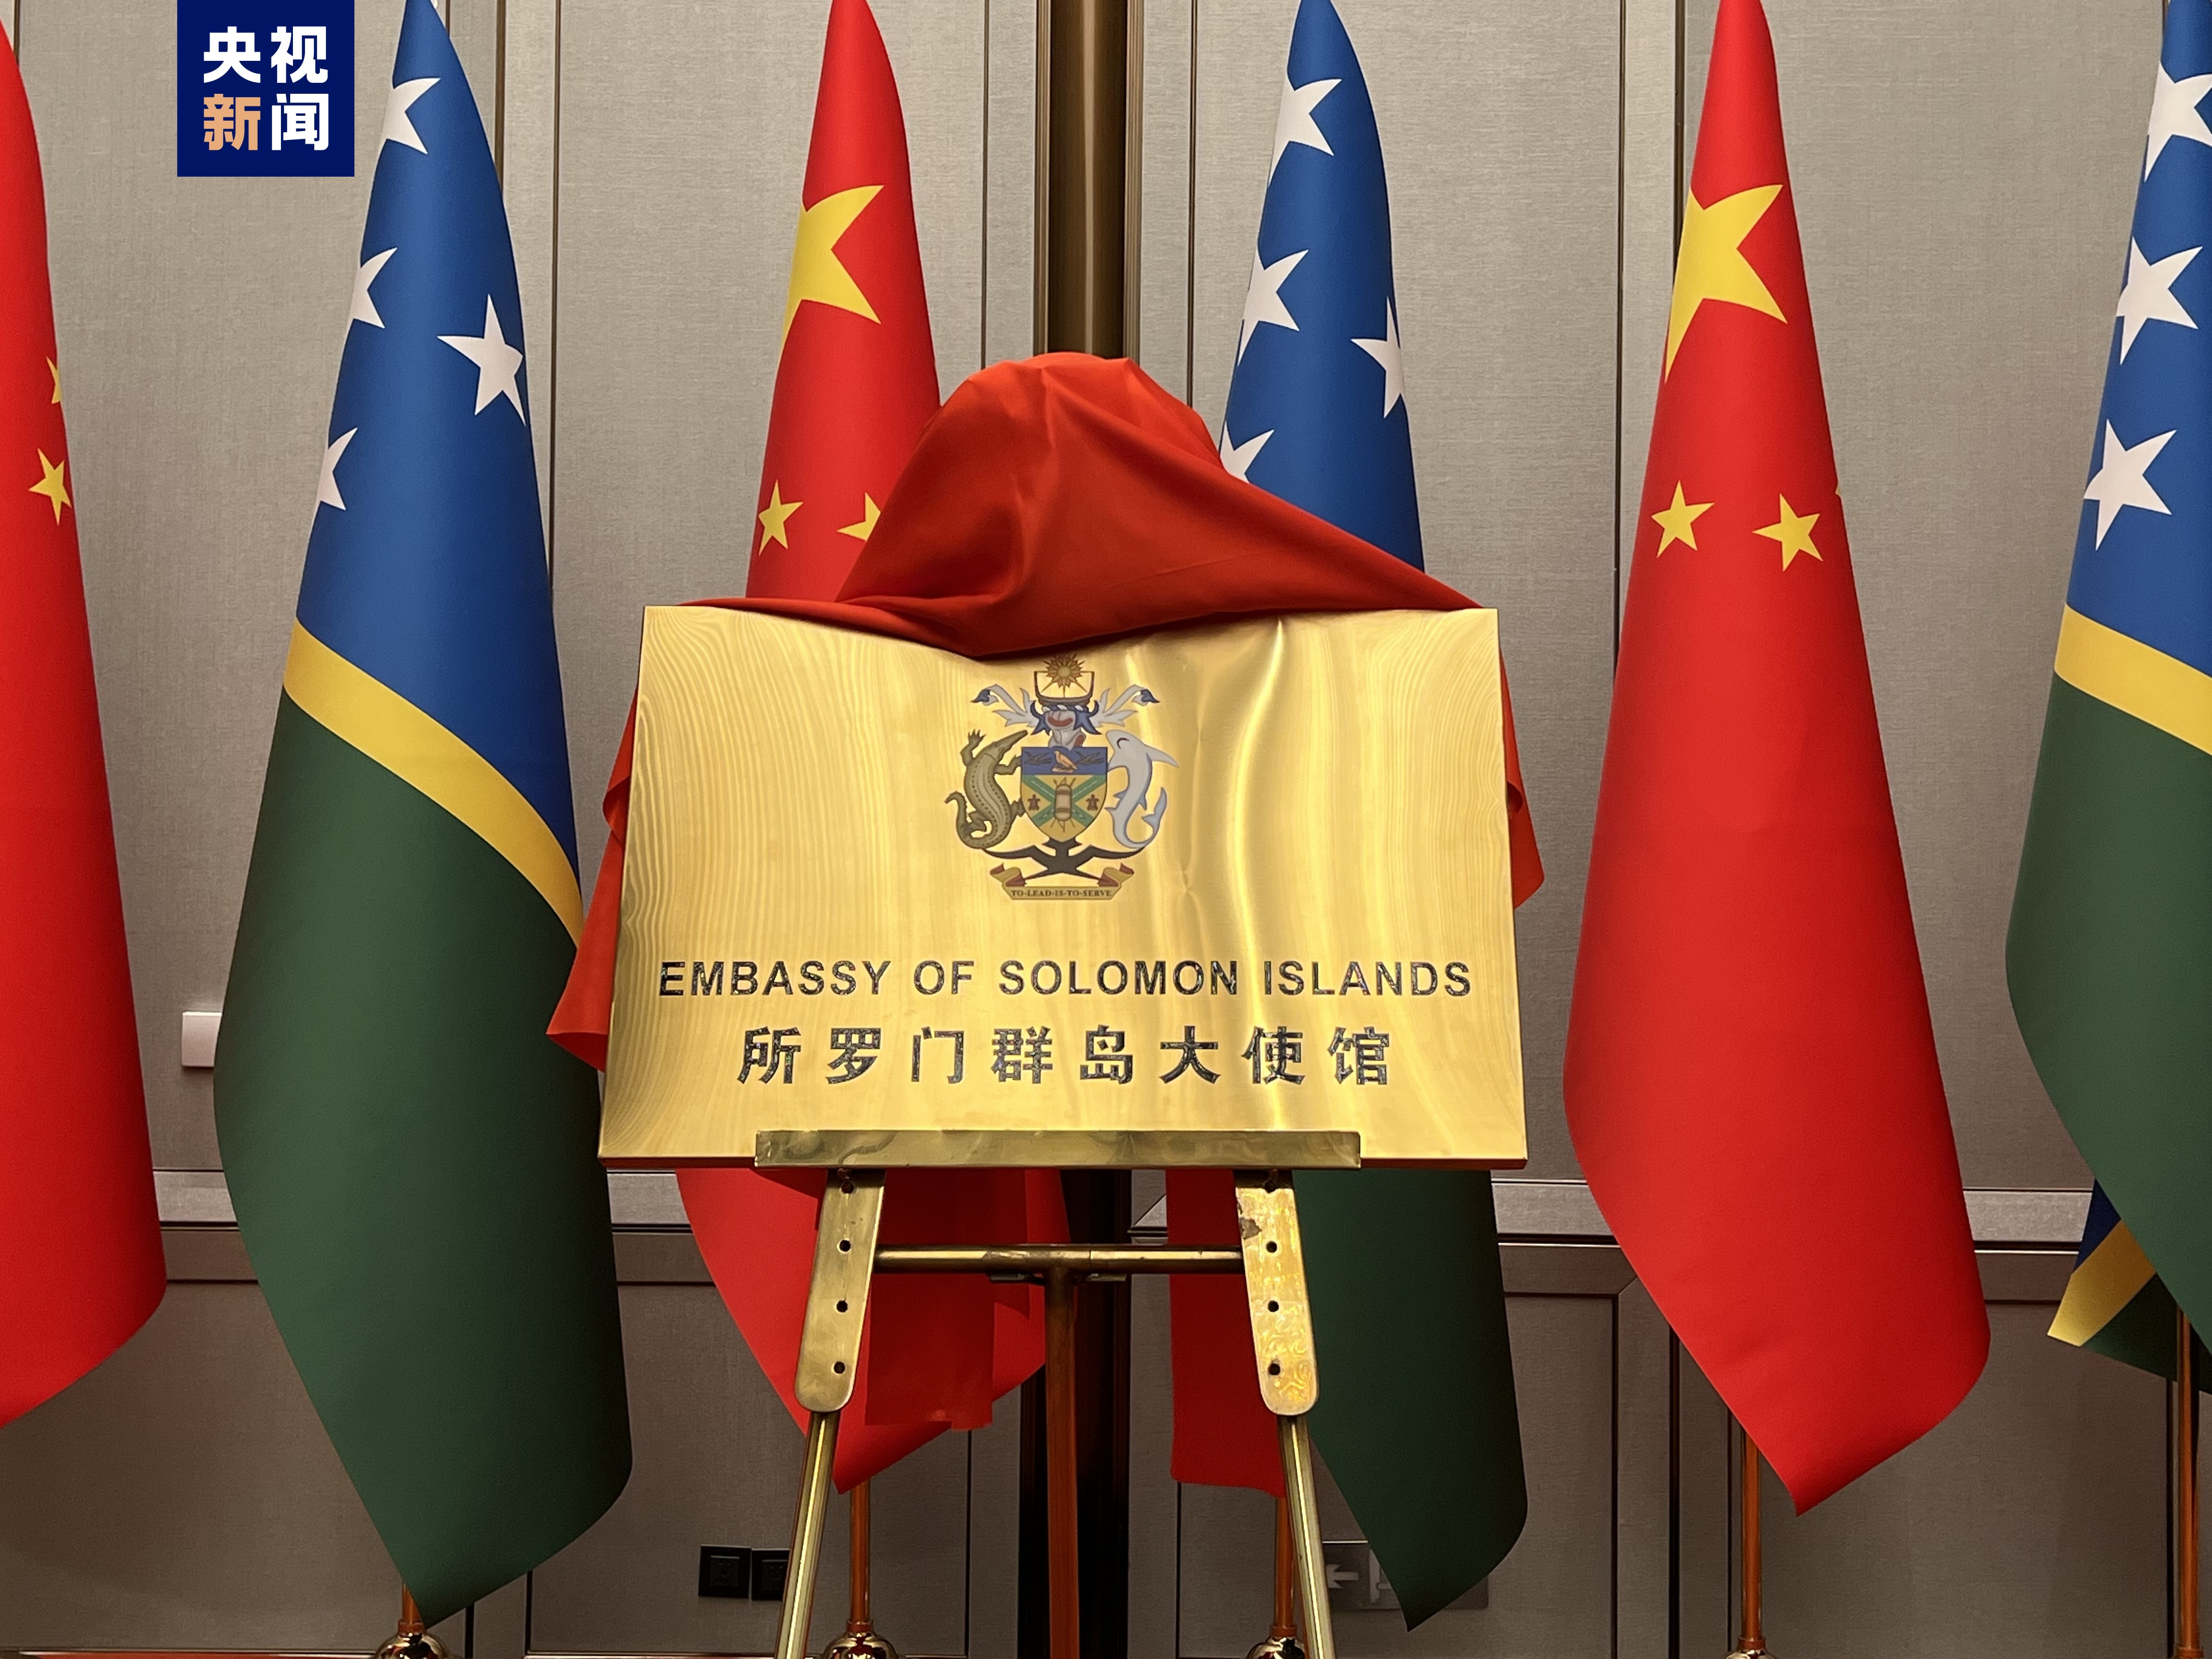 Solomon Adaları'nın Beijing Büyükelçiliği'nin açılış töreni düzenlendi